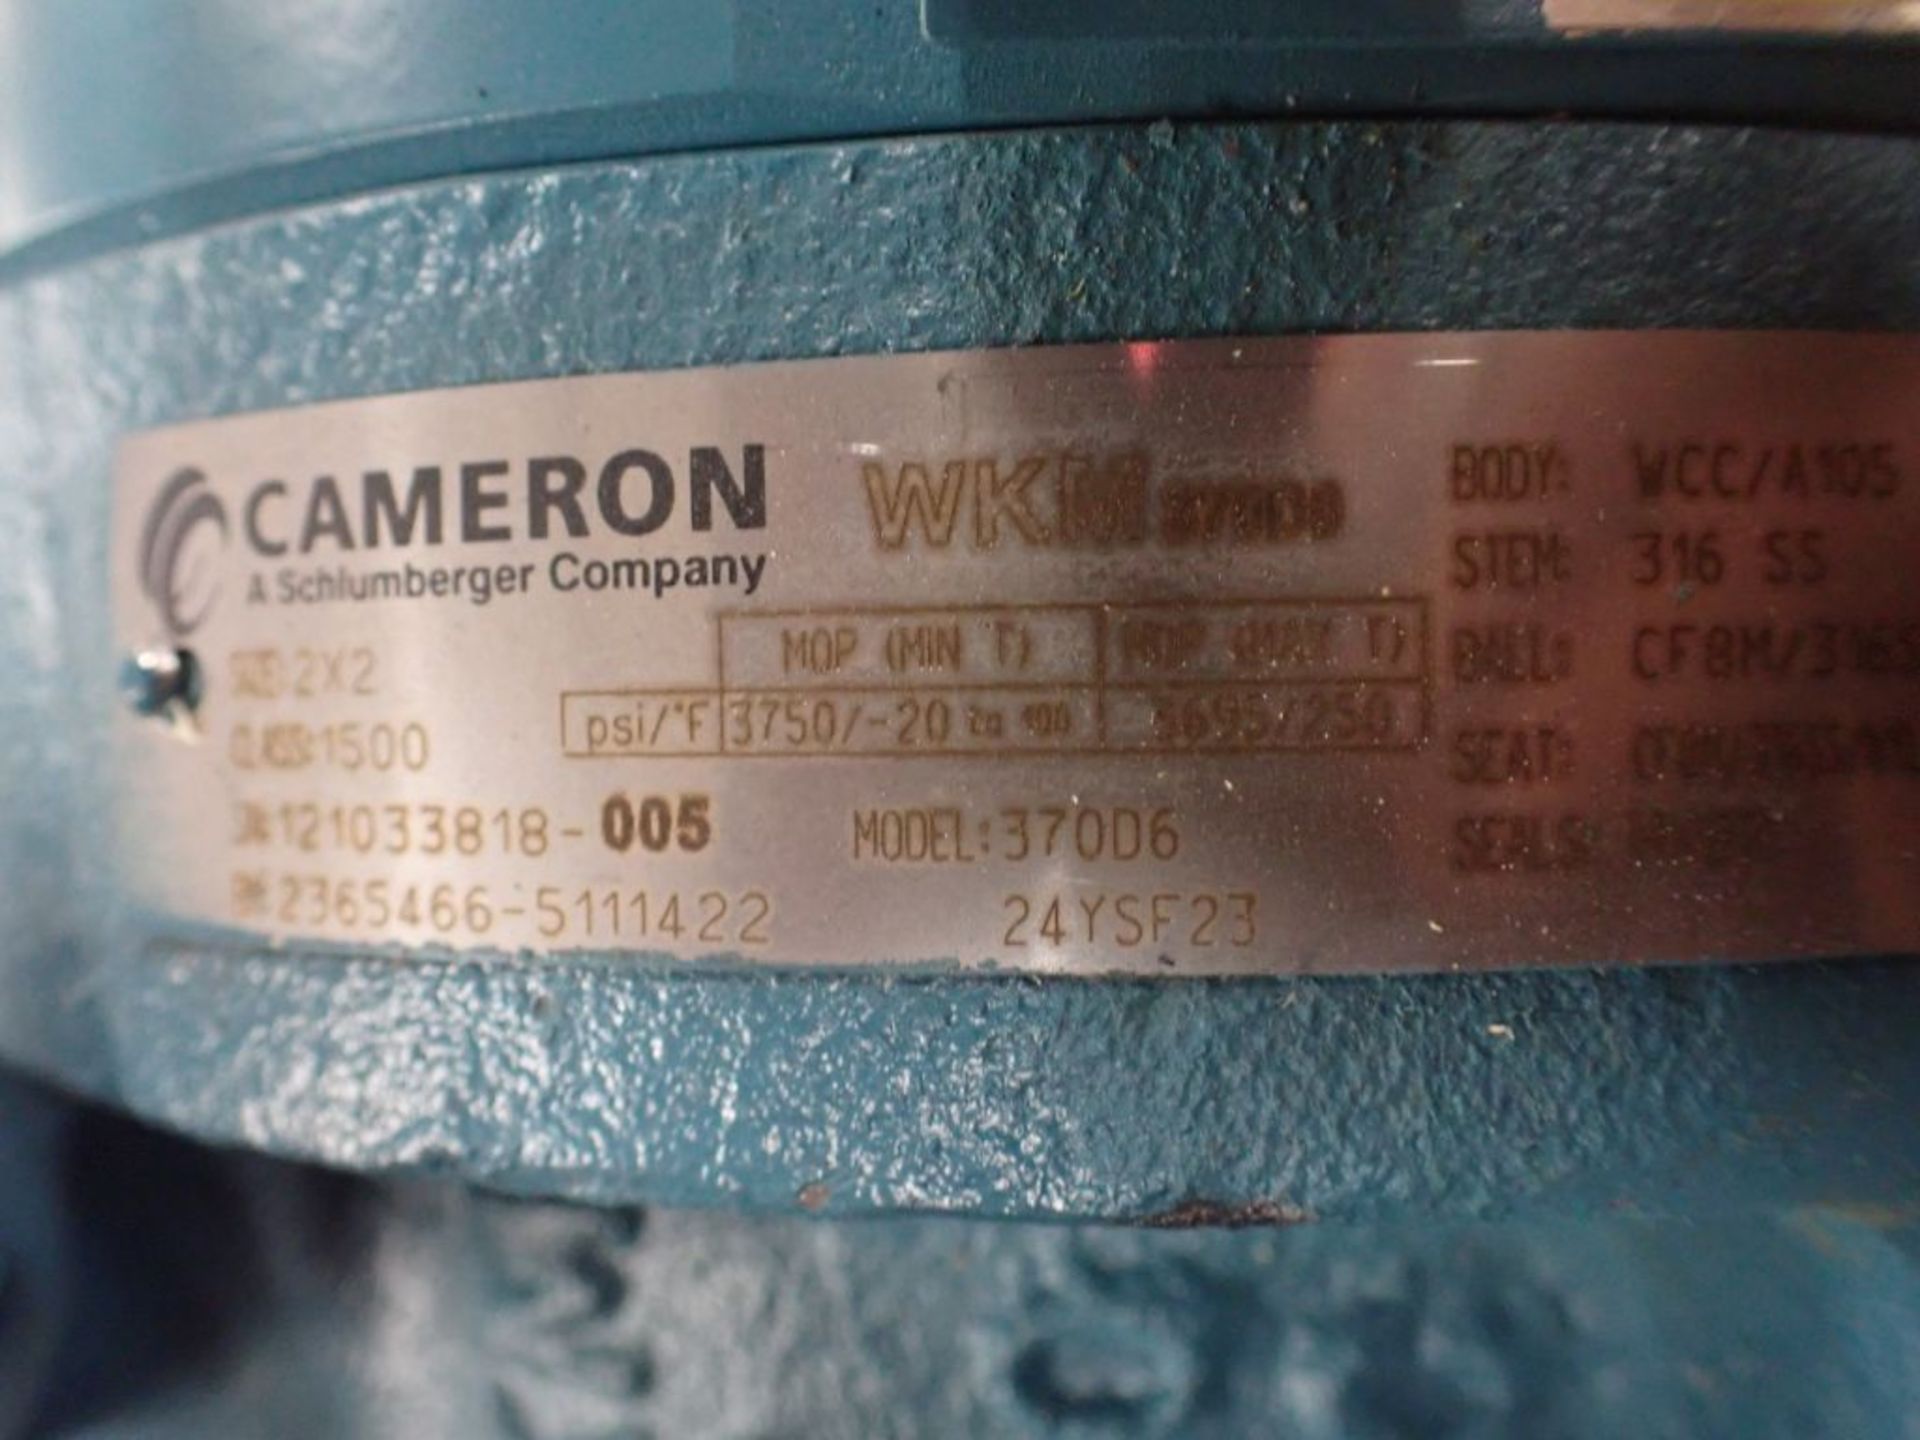 Cameron Valve - Serial No. 121033818; Model No. 370D6 - Image 6 of 10